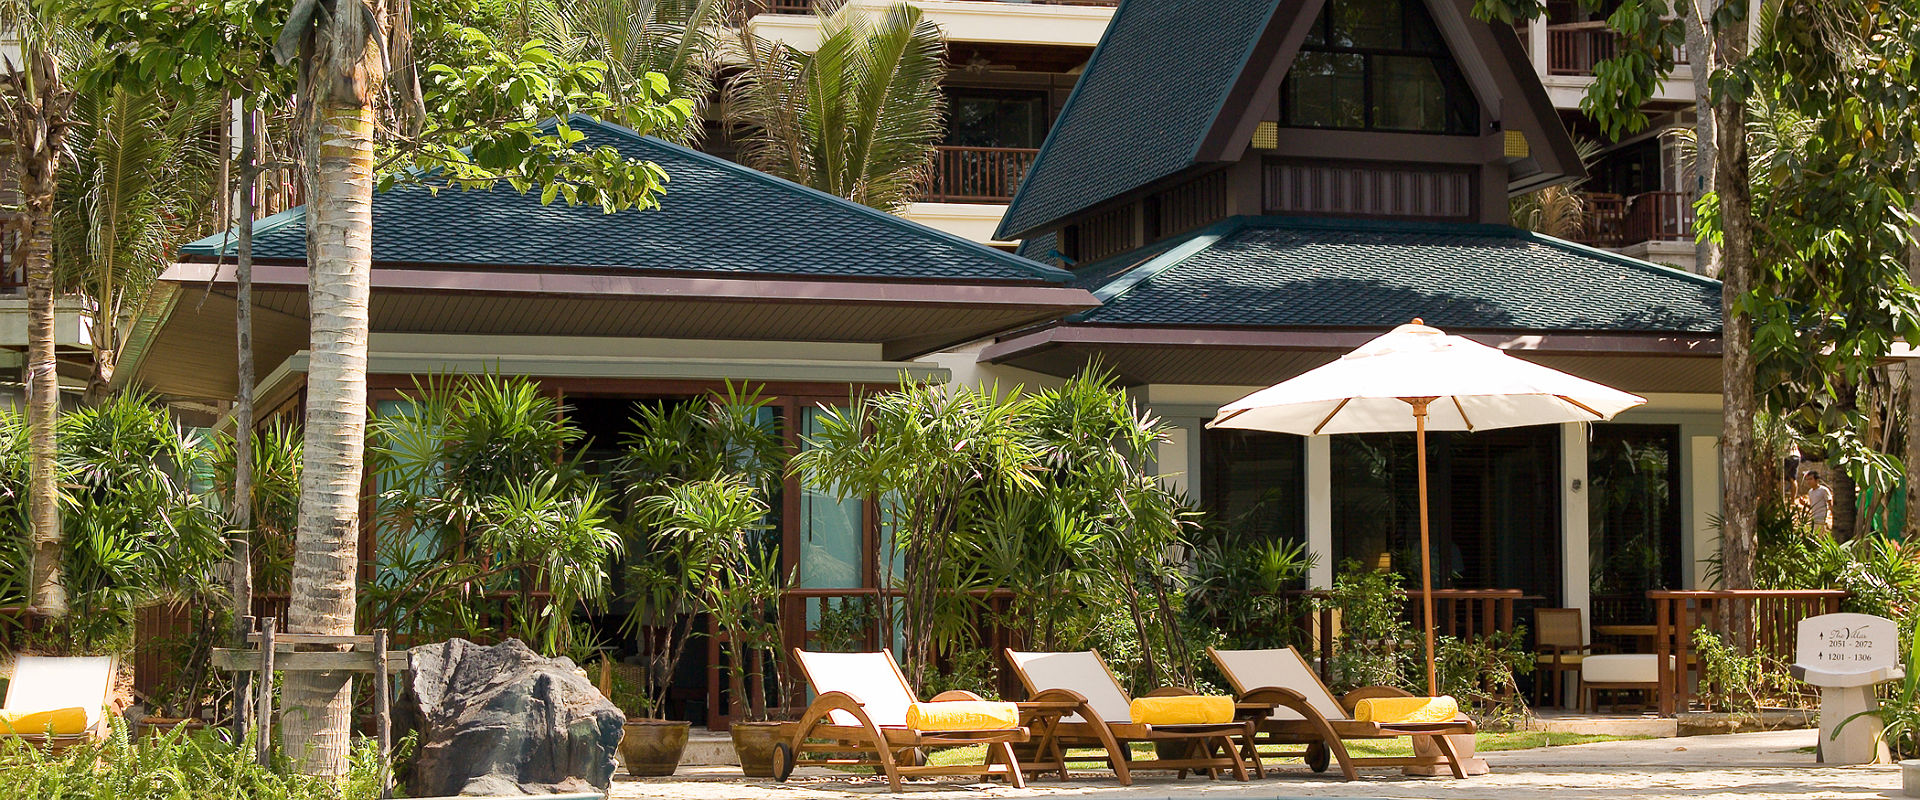 Centara Grand Beach Resort & Villas Krabi - Villa One Bedroom Pool Access